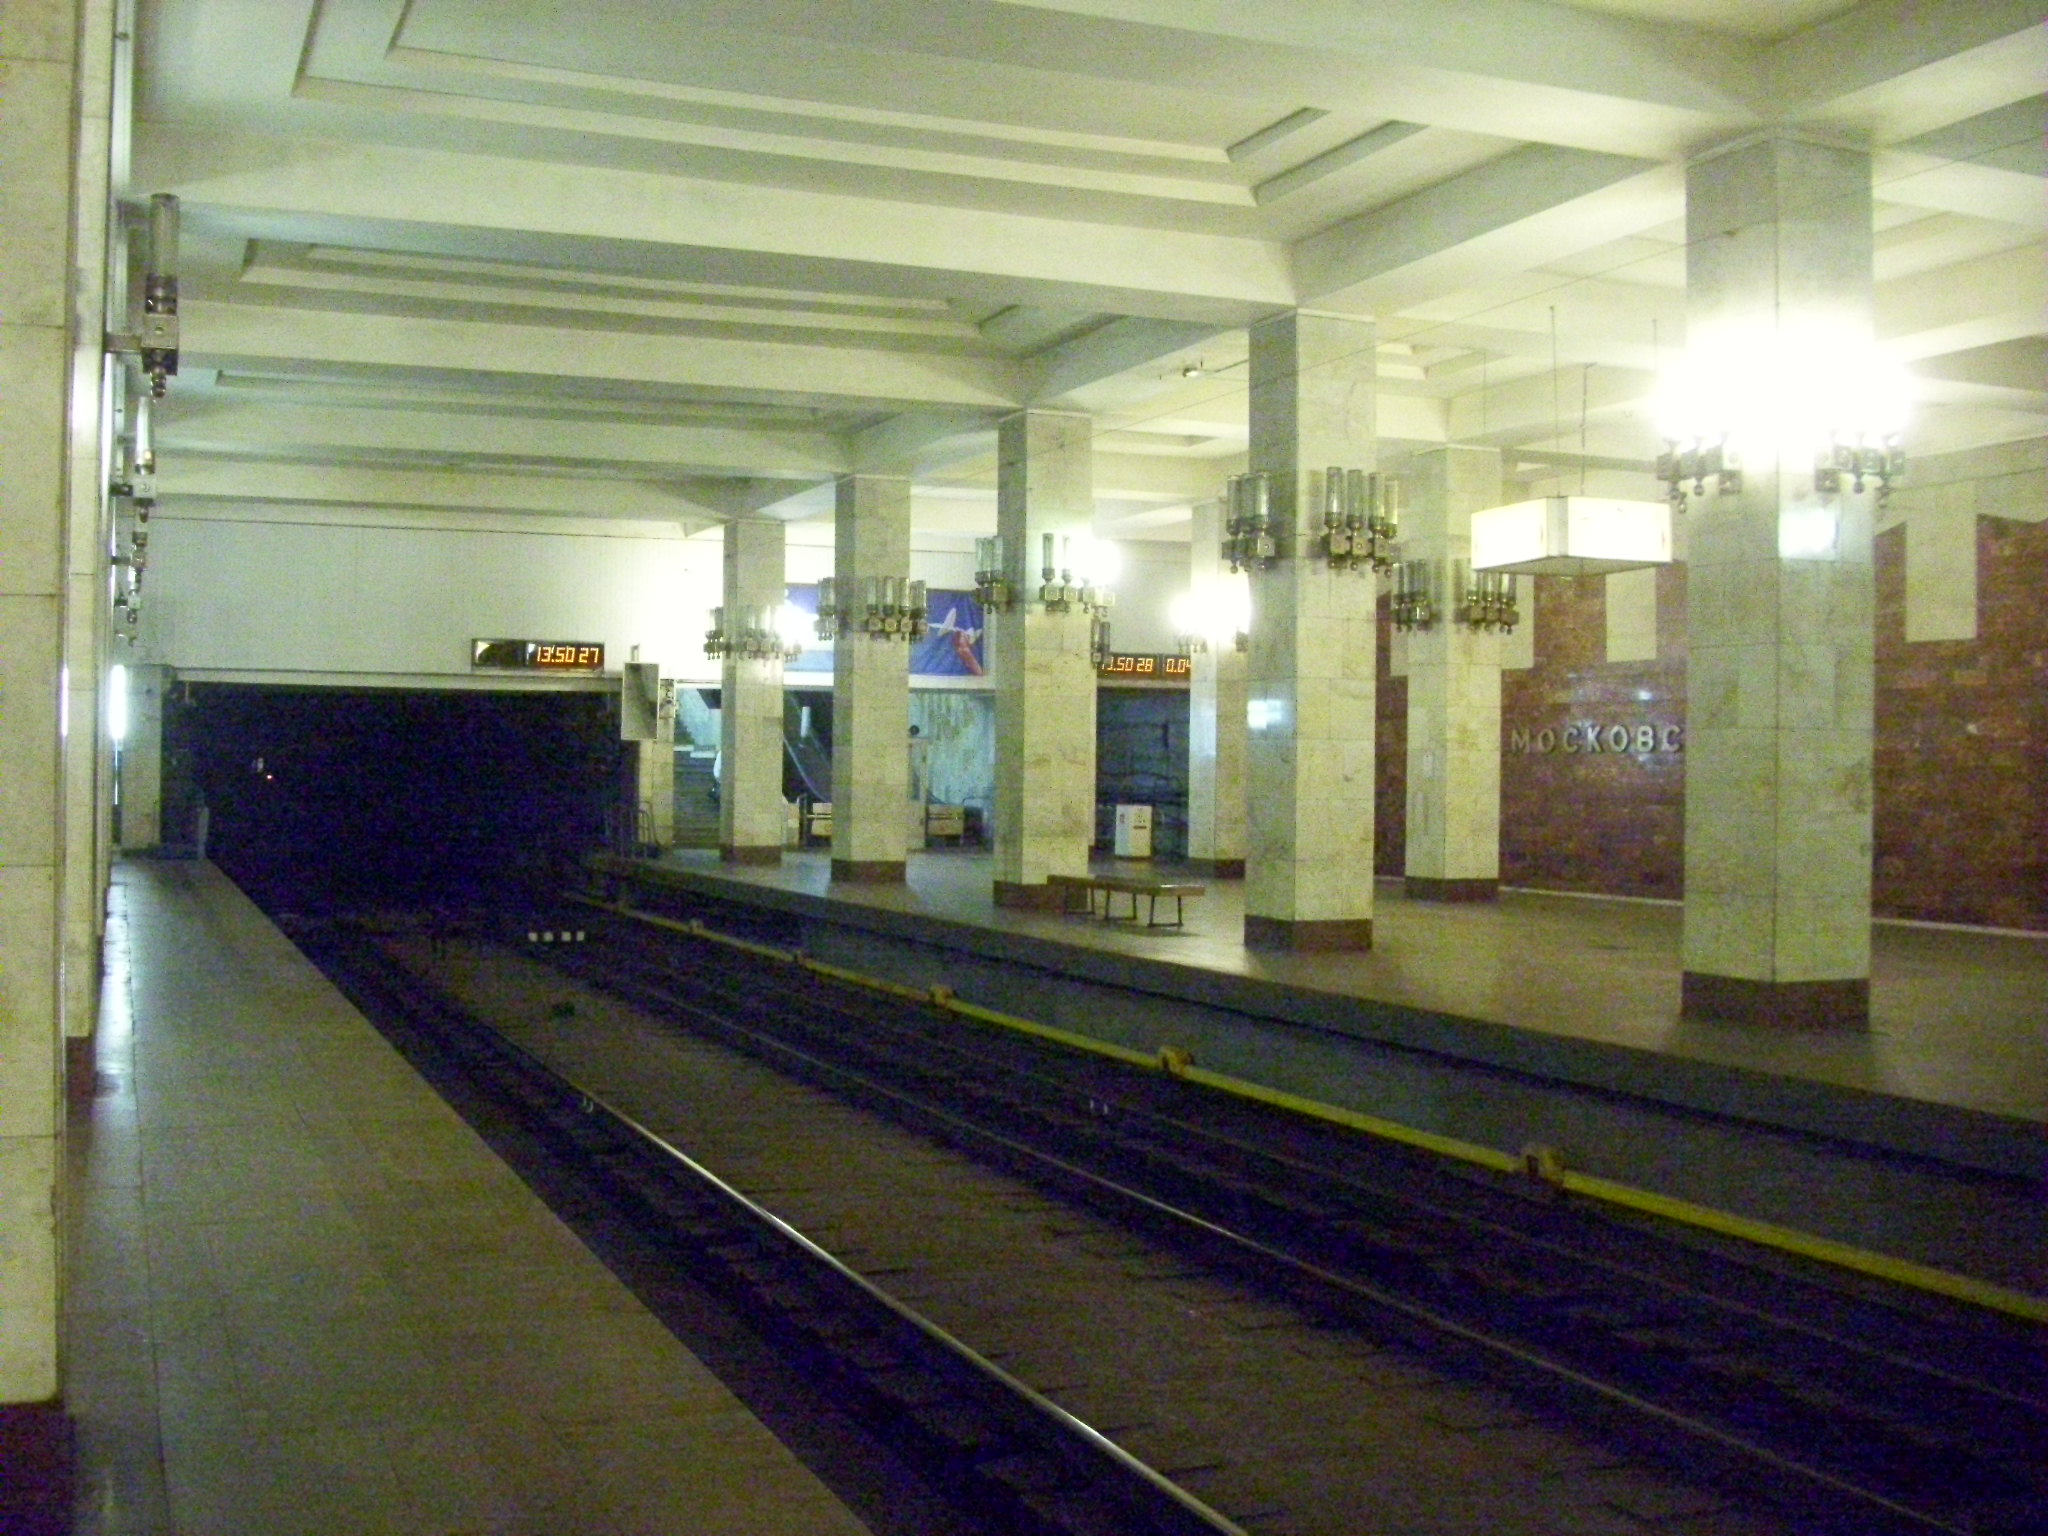 Нижегородский метрополитен  — станция «Московская»